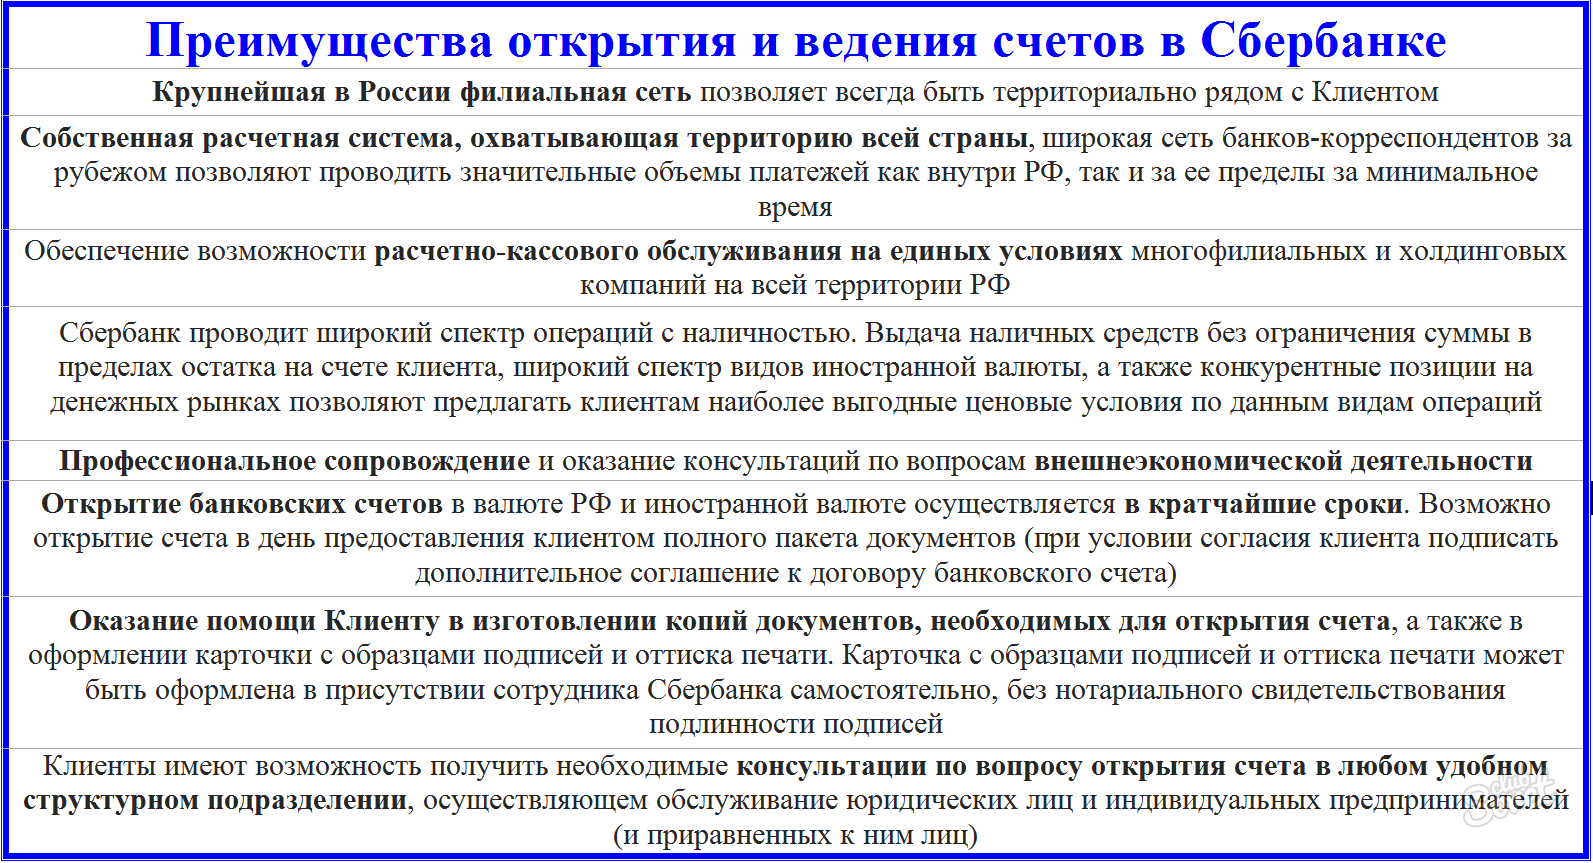 Fördelar med service i Sberbank